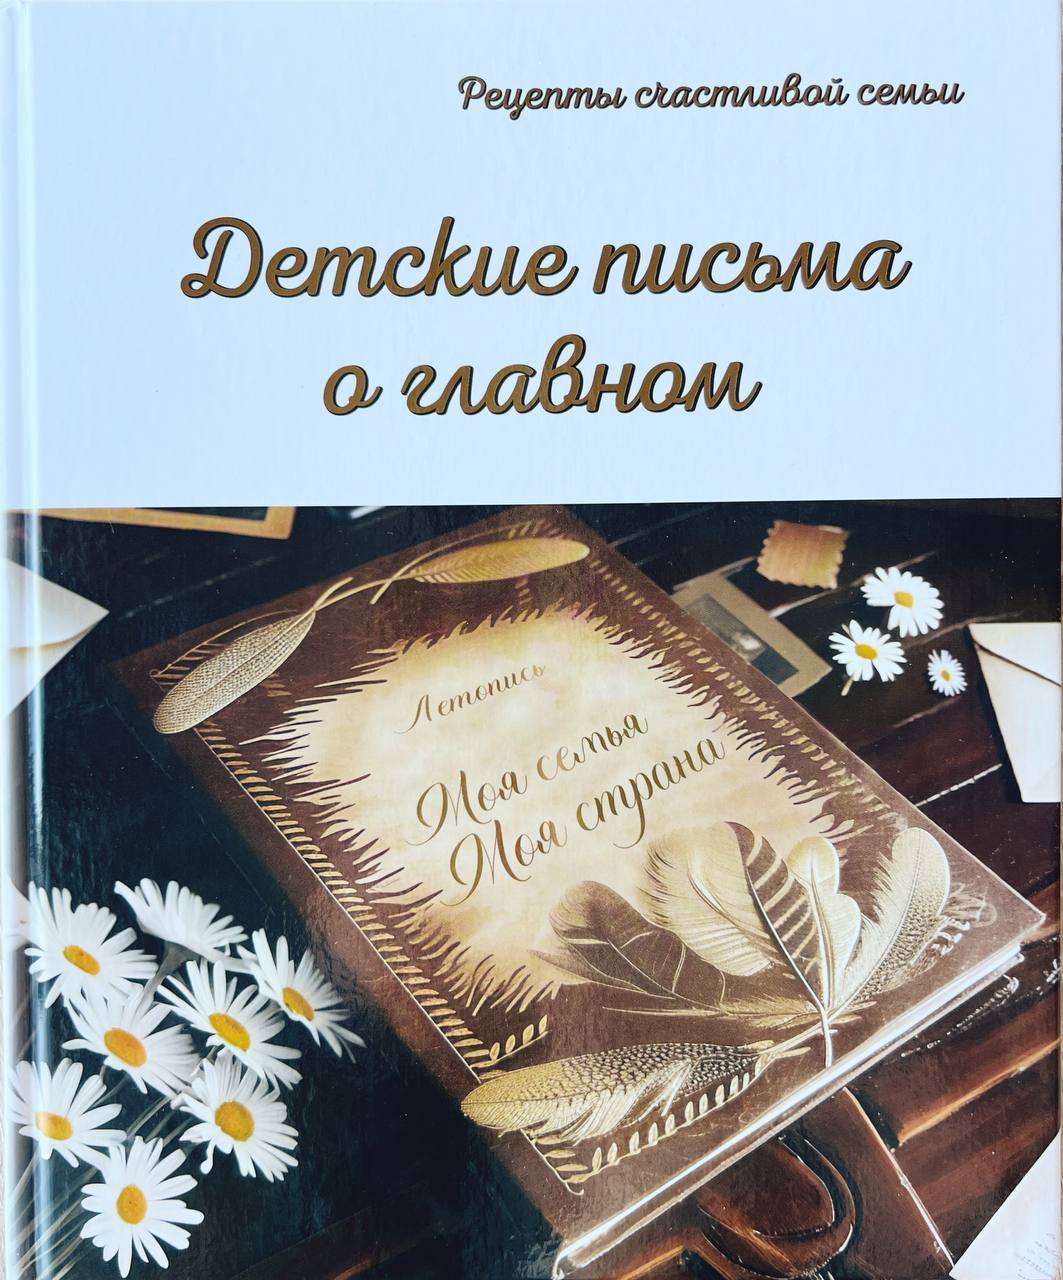 Вышла книга с письмами победителей Всероссийского почтового конкурса «Лучший урок письма».